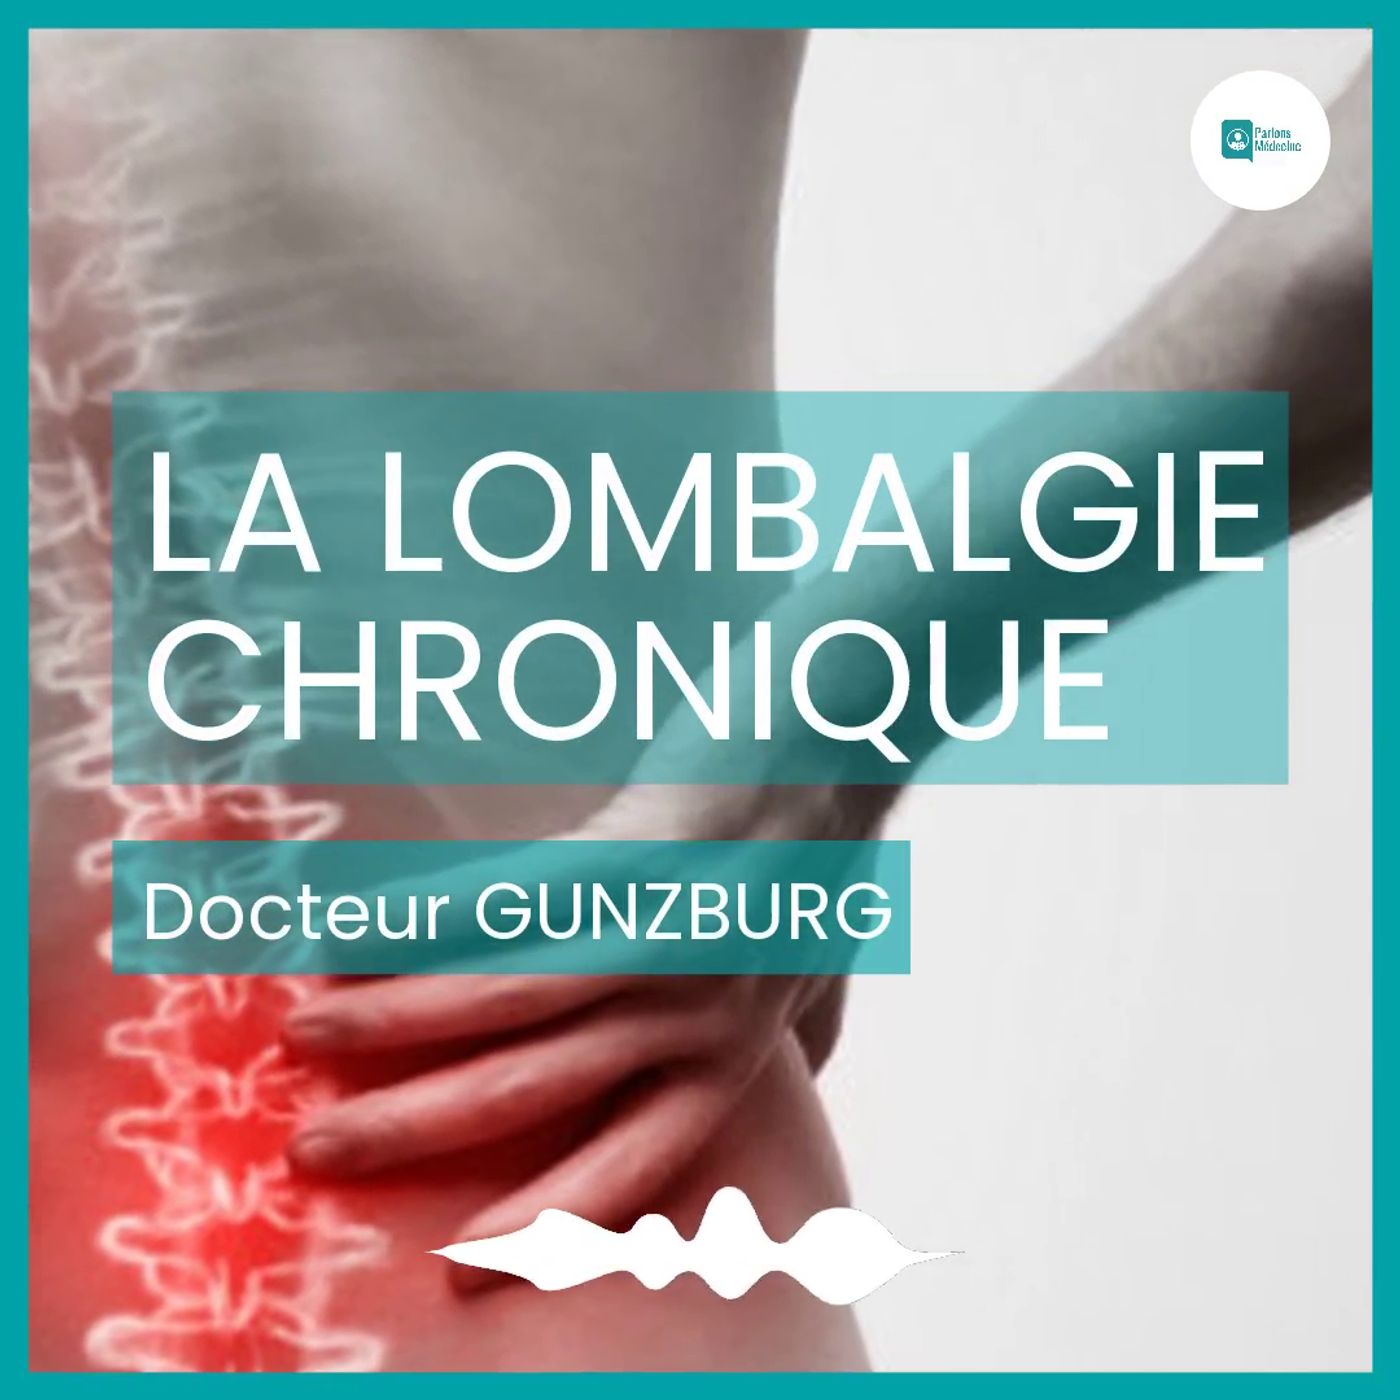 La lombalgie chronique - Docteur Gunzburg